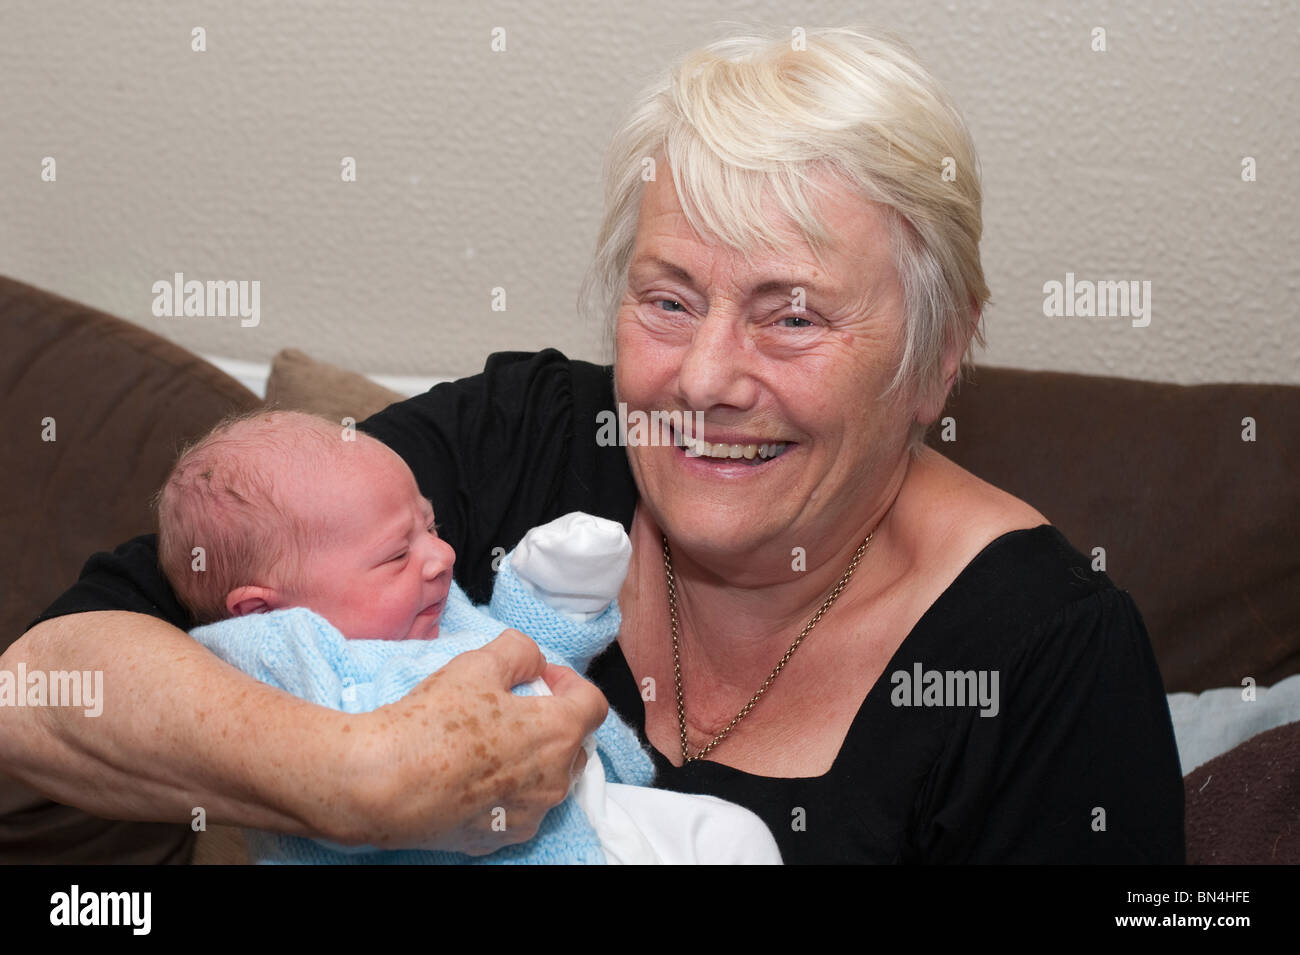 Un fier grand-mère avec son petit-fils Banque D'Images